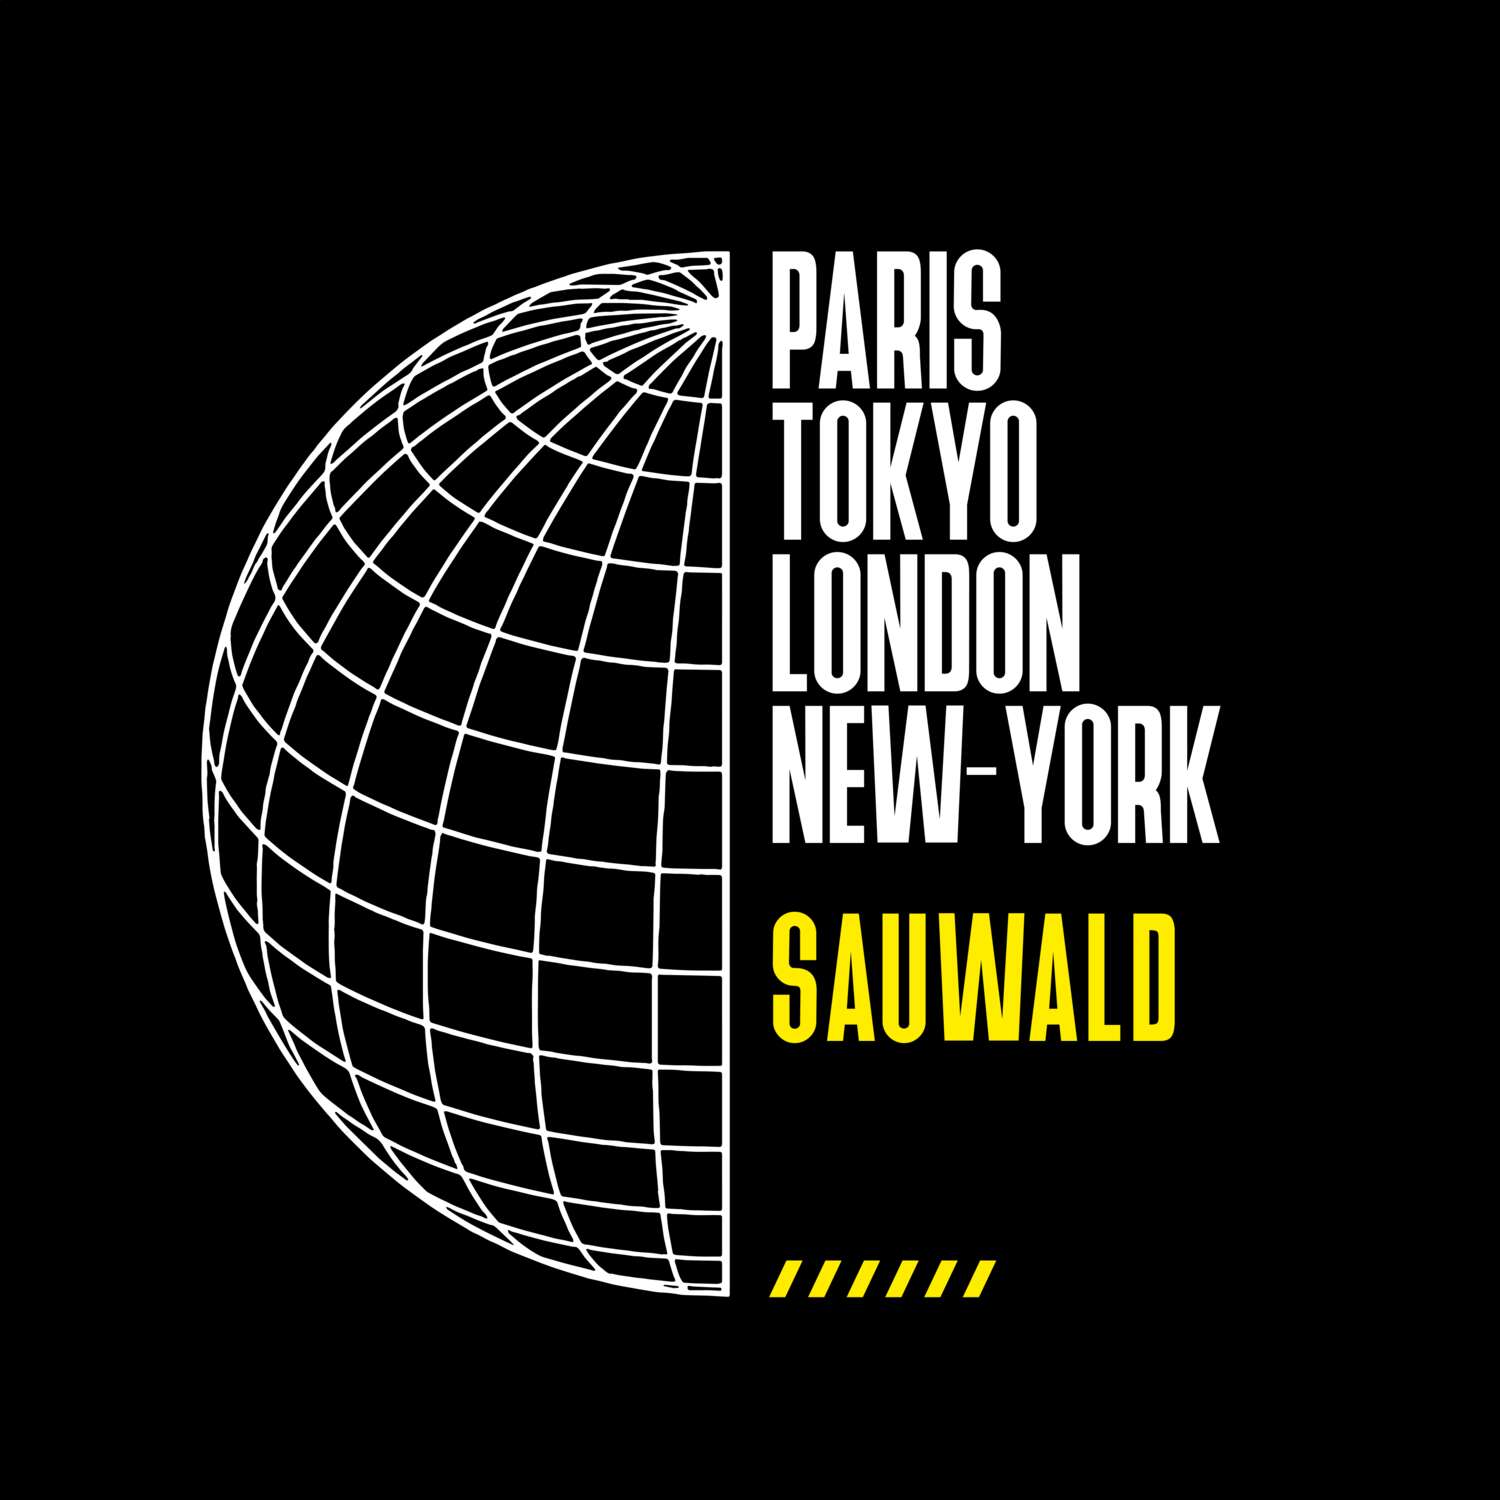 Sauwald T-Shirt »Paris Tokyo London«